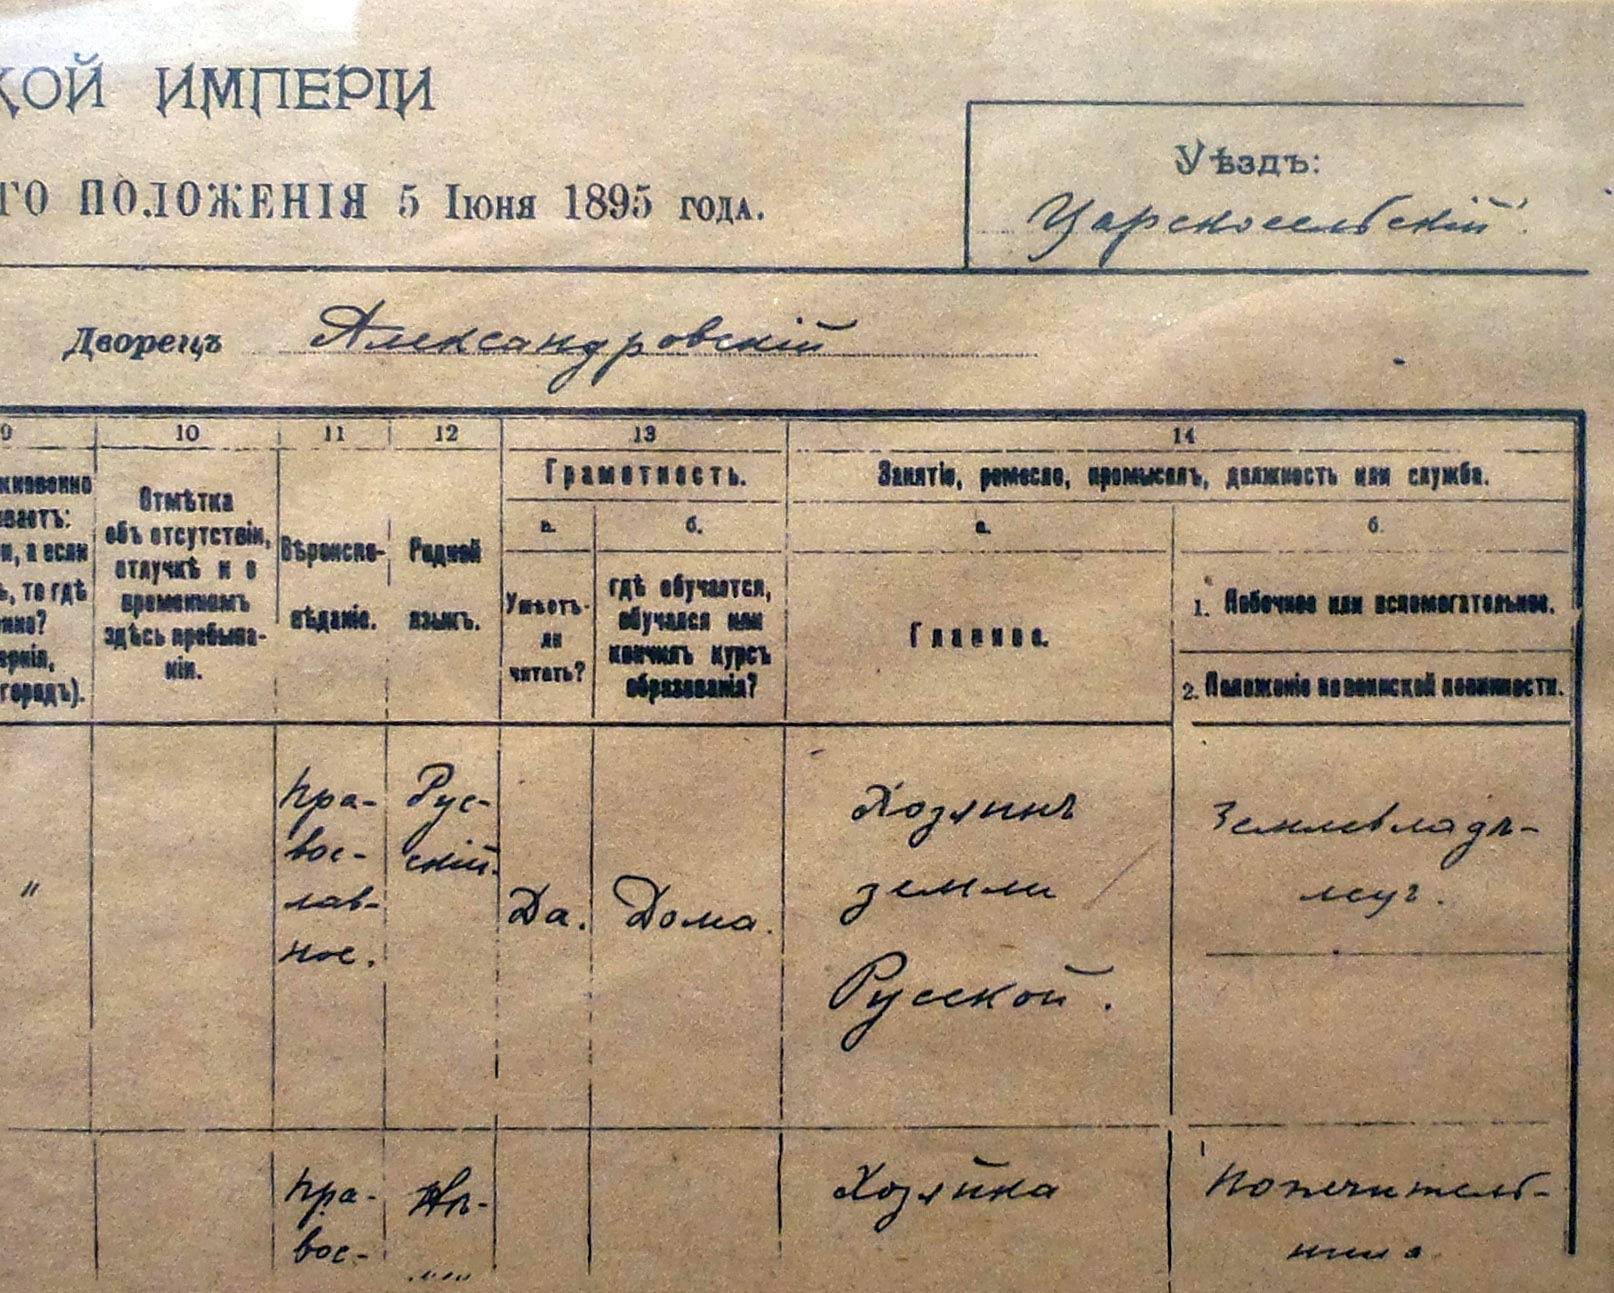 Николай Втори описва професията си като стопанин на руската земя